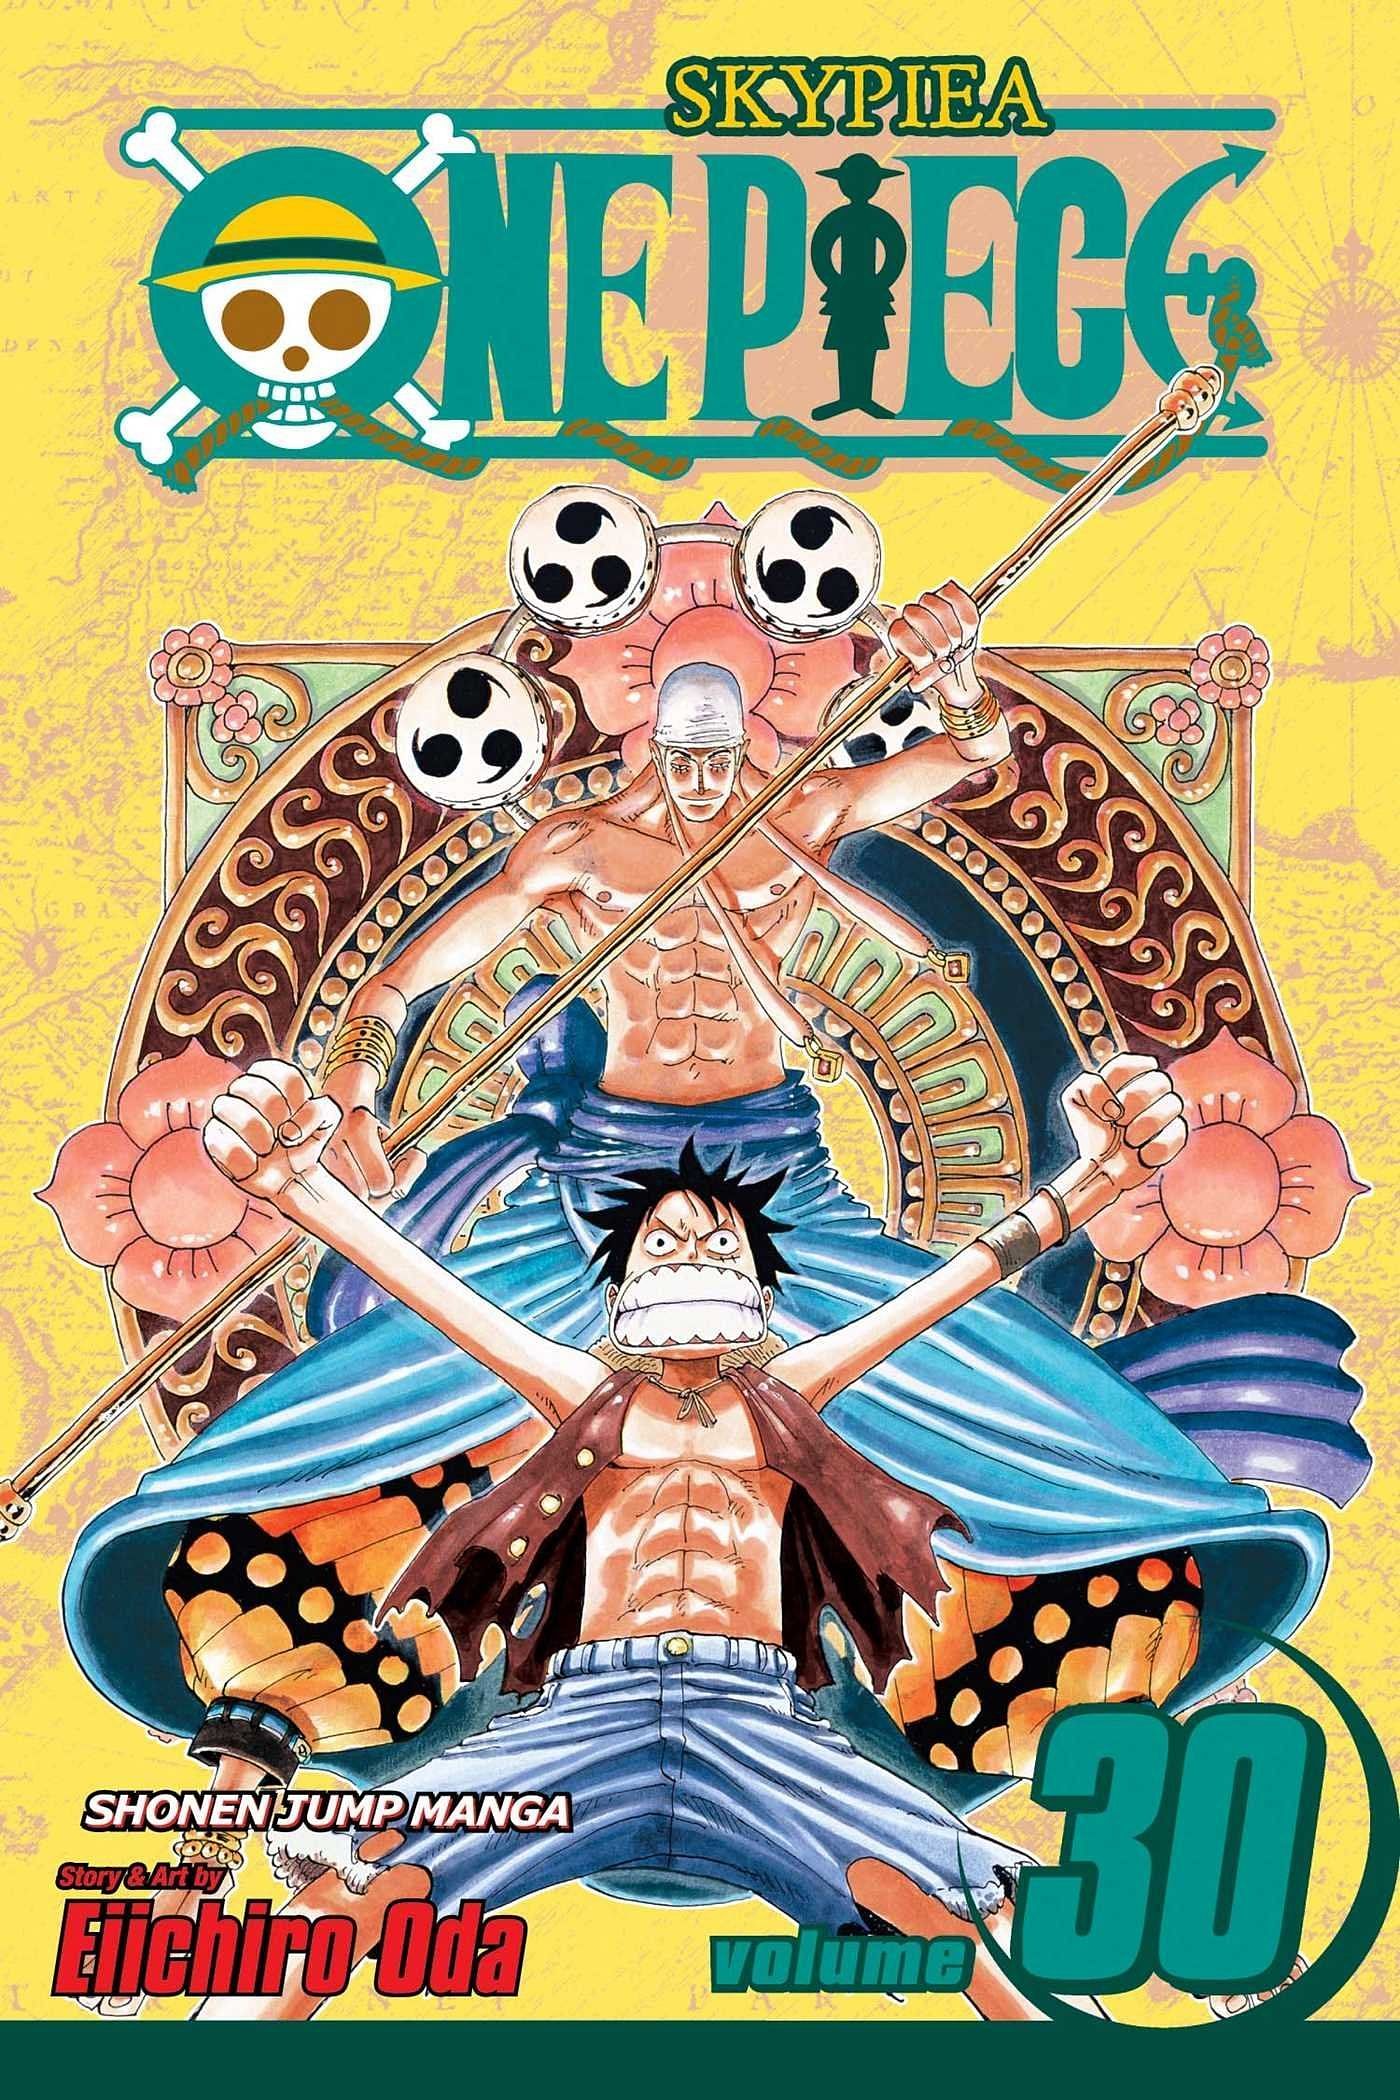 The cover art for One Piece Volume 30 (Image via Shueisha)